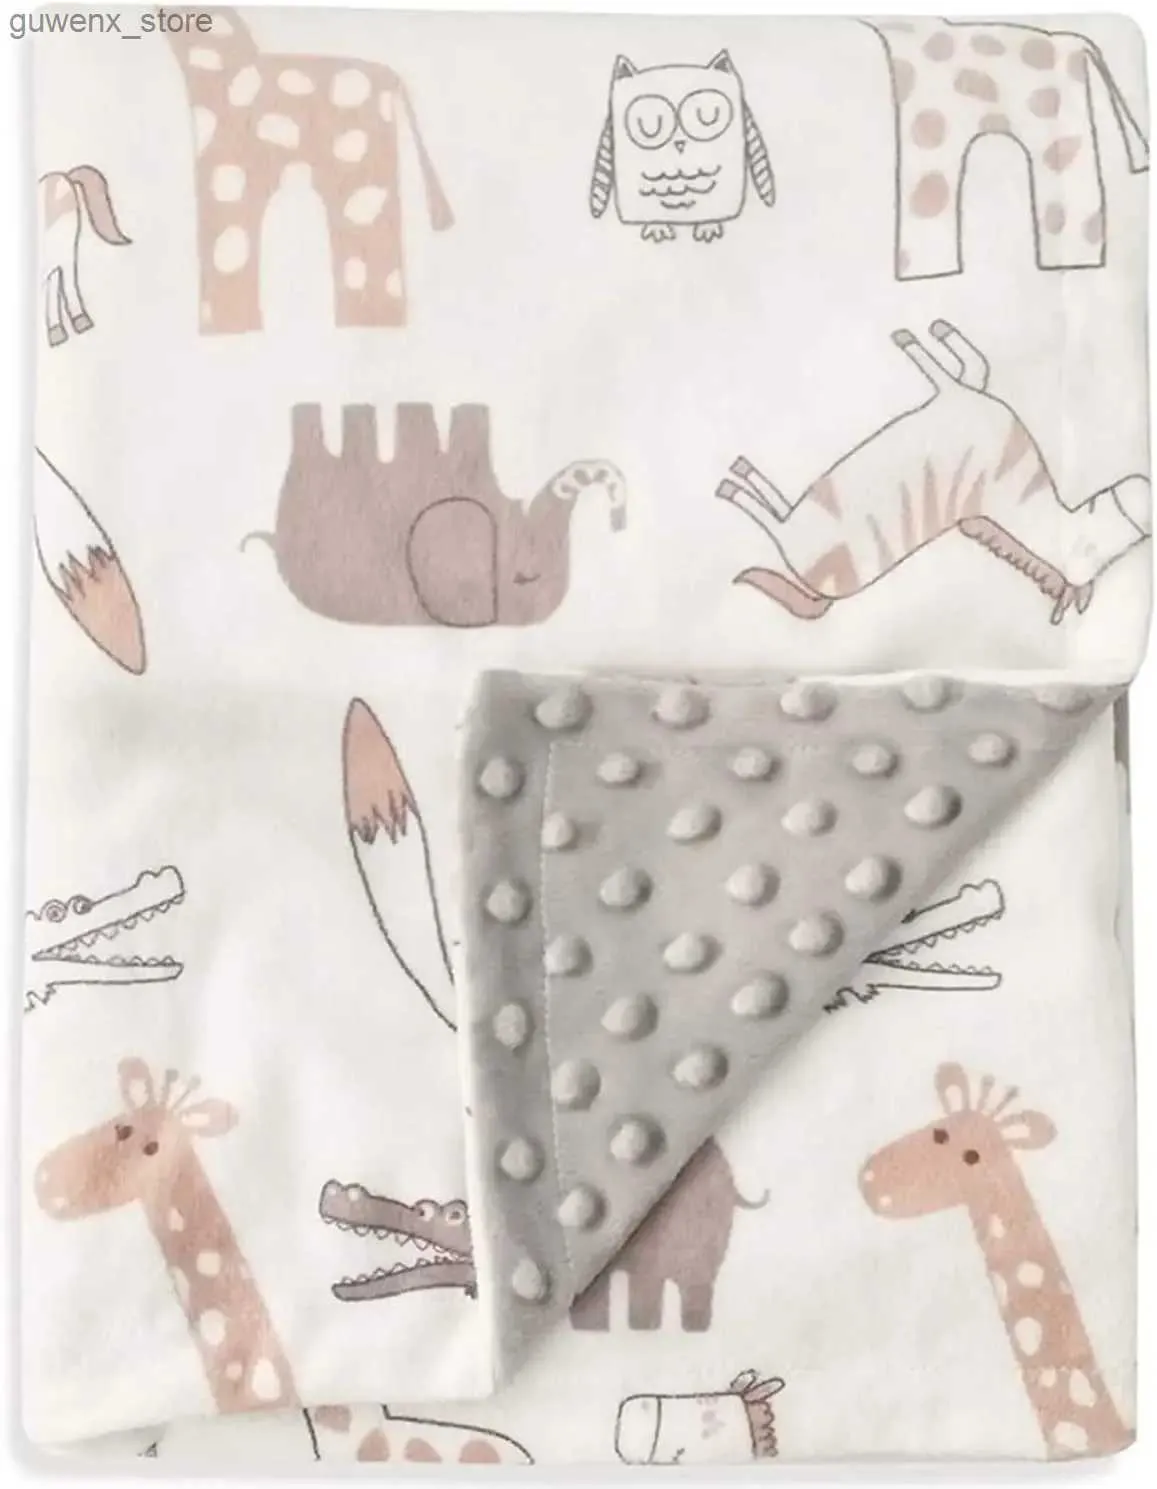 Cobertores Pão macio macio Doudou para recém -nascidos Baby Swaddle Blanket Cartoon Print Print Roller Blanket Fleece Baby Itens Bedding Y240411